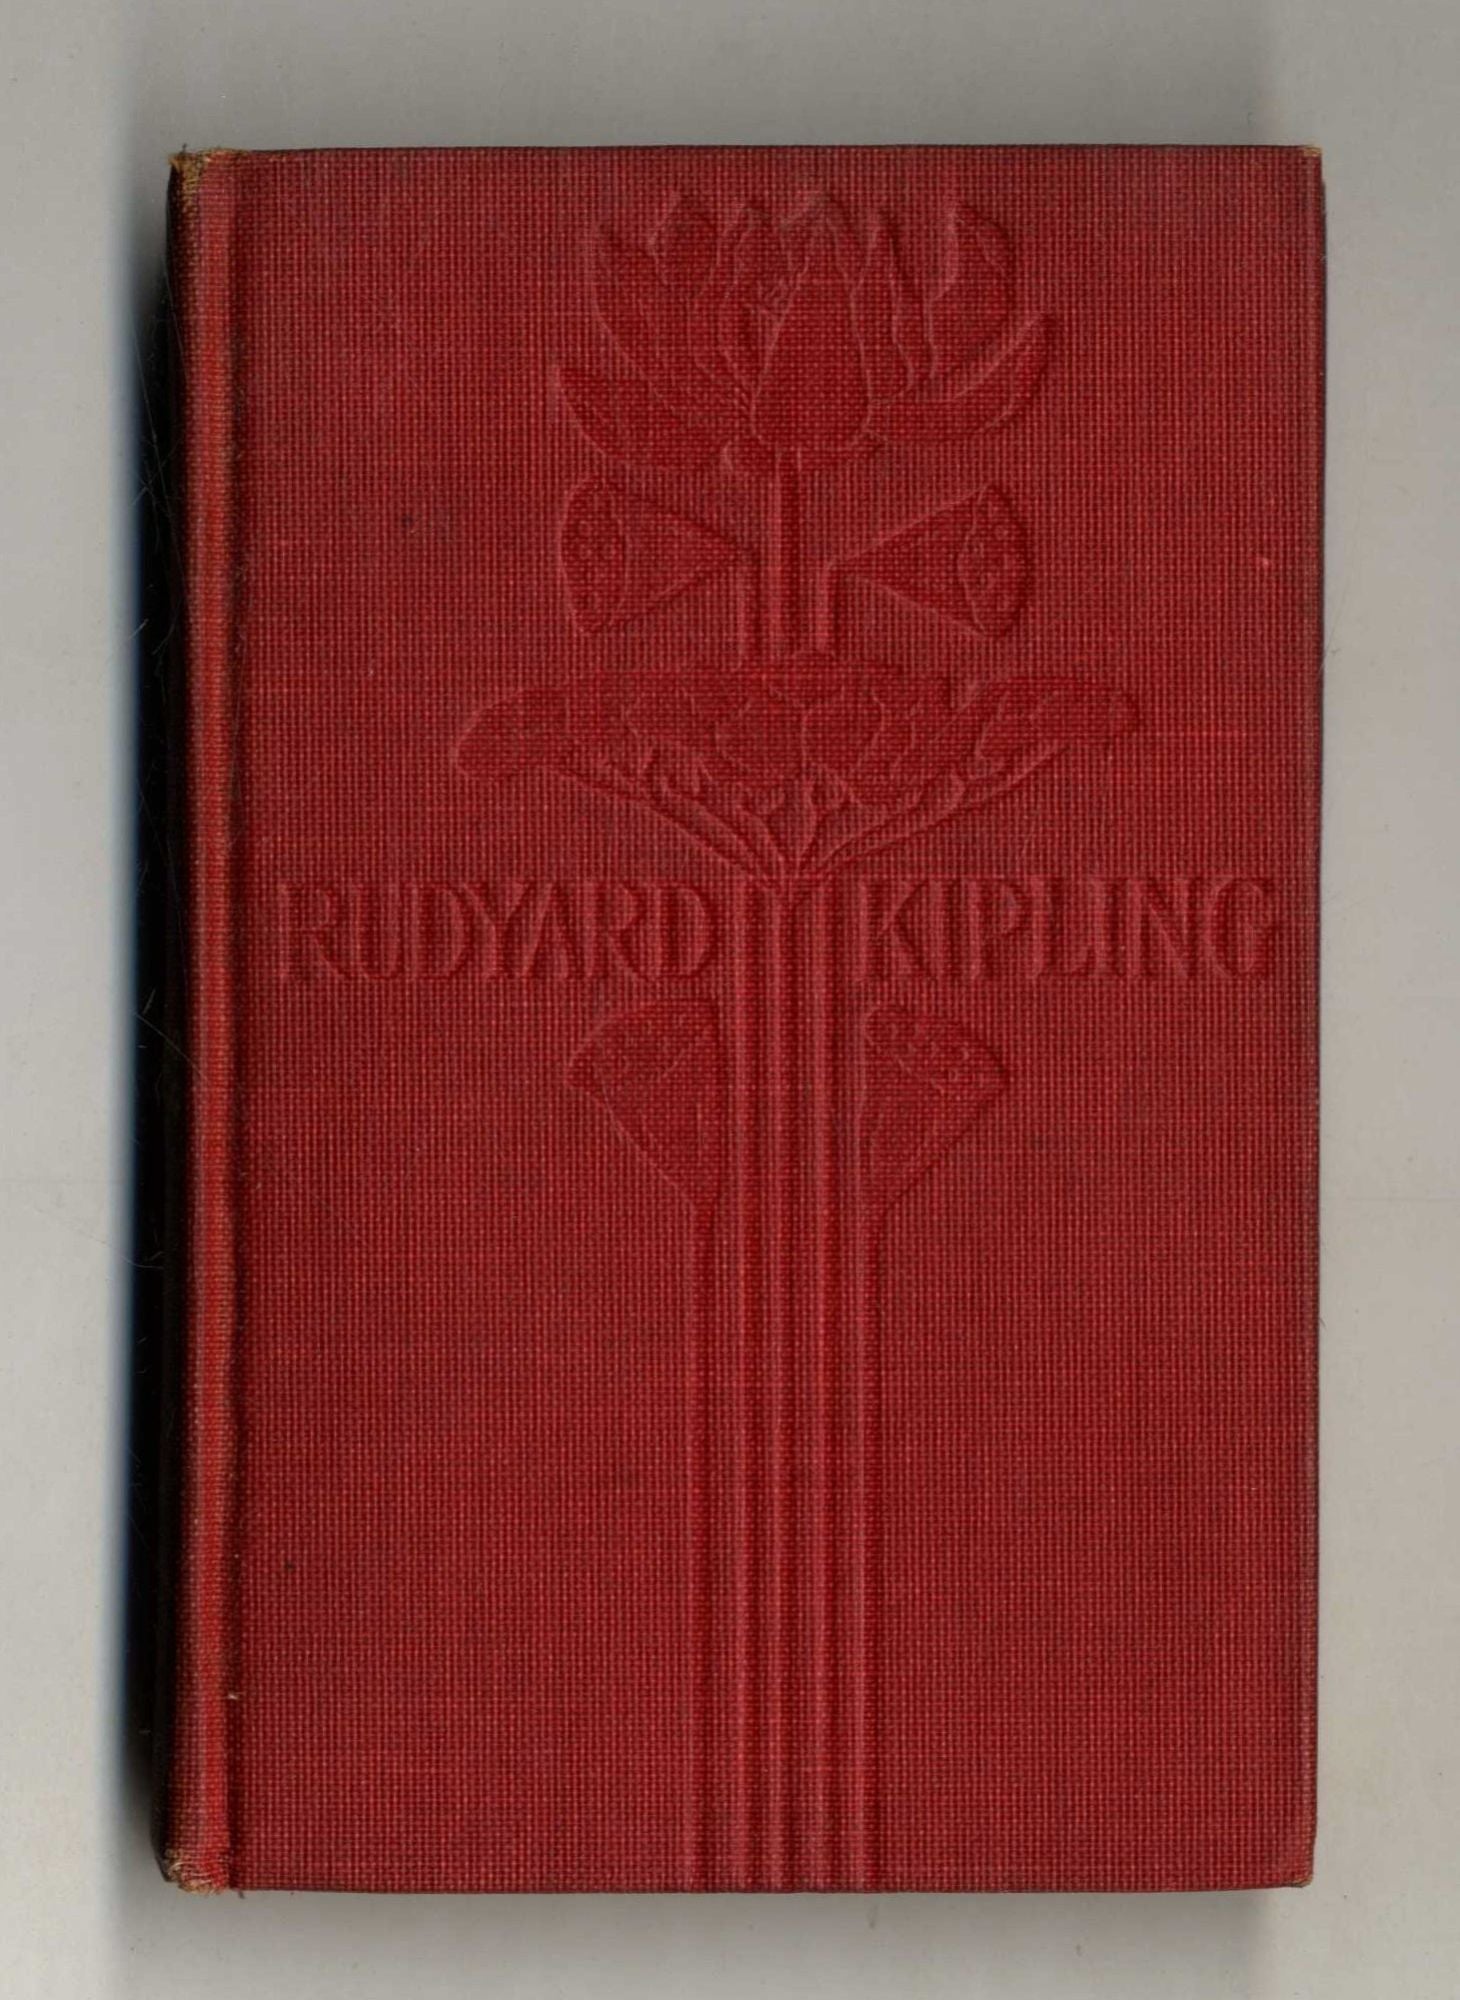 Book #160150 American Notes. Rudyard Kipling.